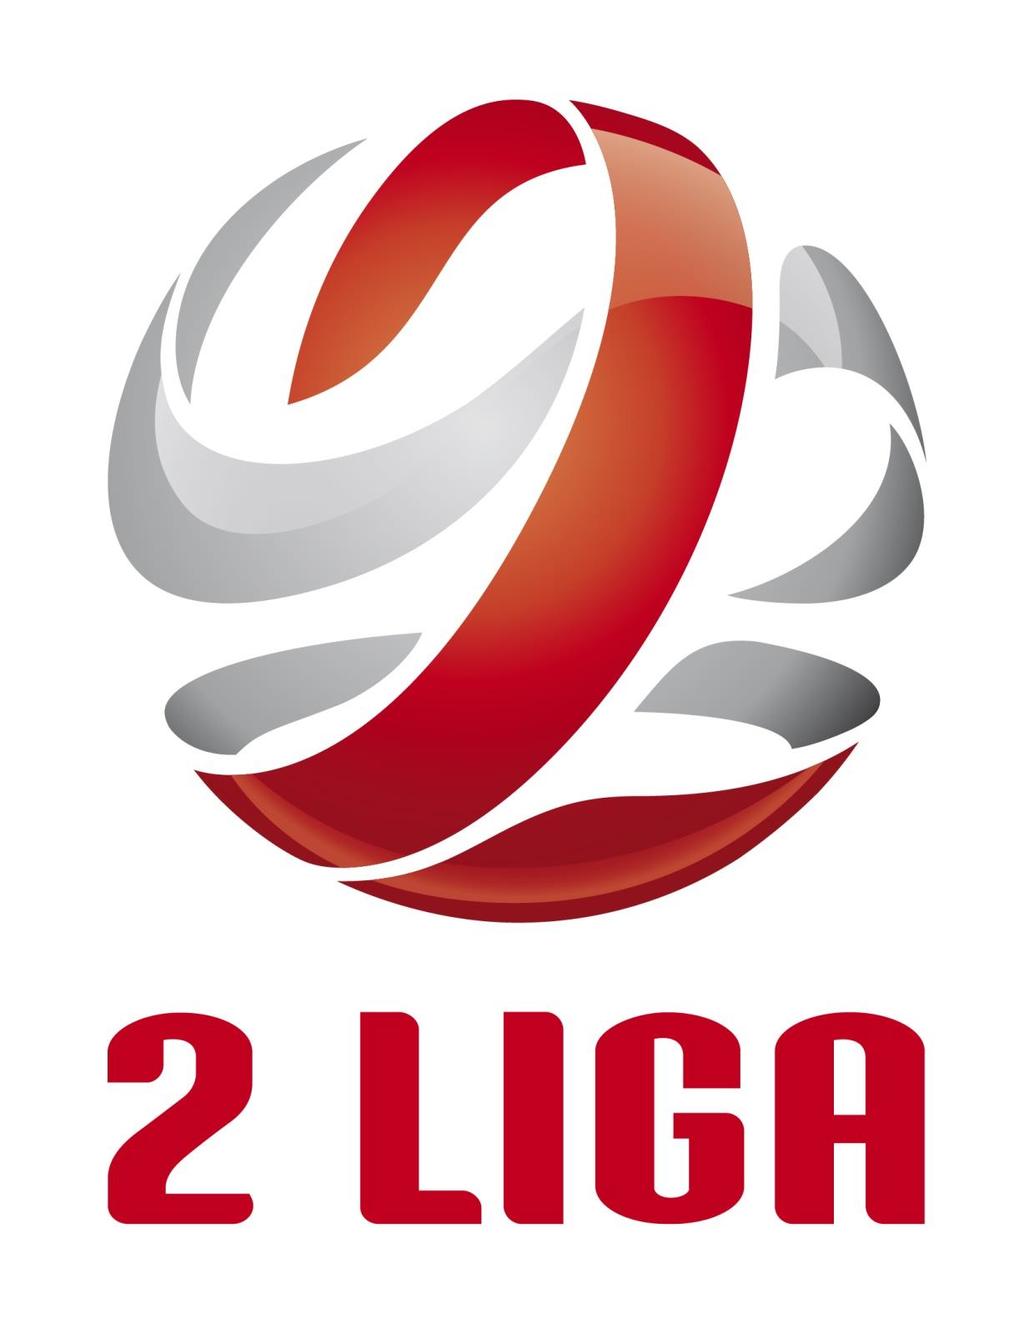 Załącznik nr 2 do Uchwały nr VI/89 z dnia 16 czerwca 2017 roku Zarządu Polskiego Związku Piłki